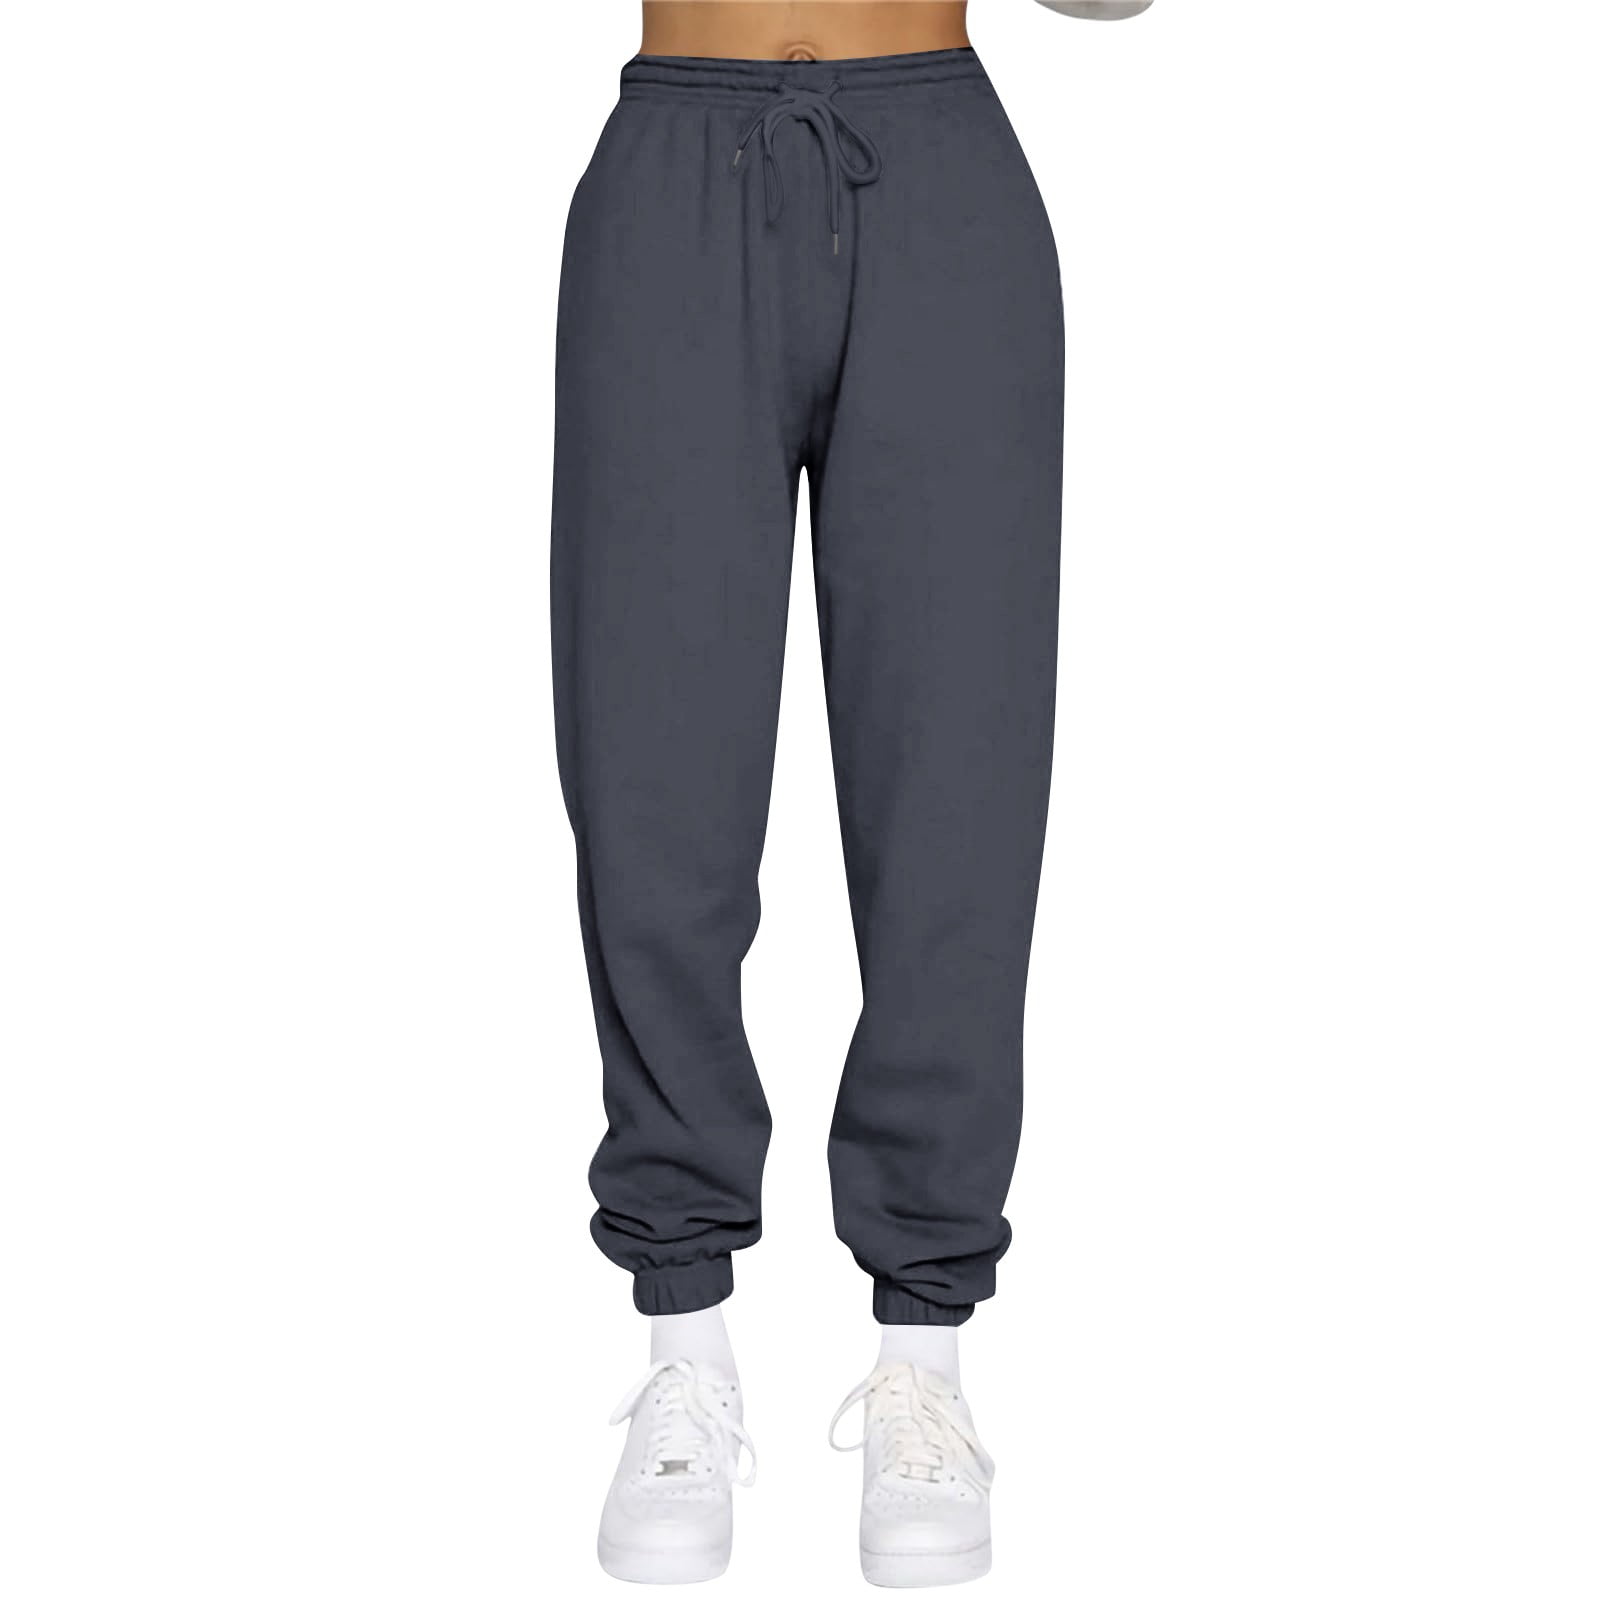 Buy AUTOMET Women's Casual Baggy Fleece Sweatpants High